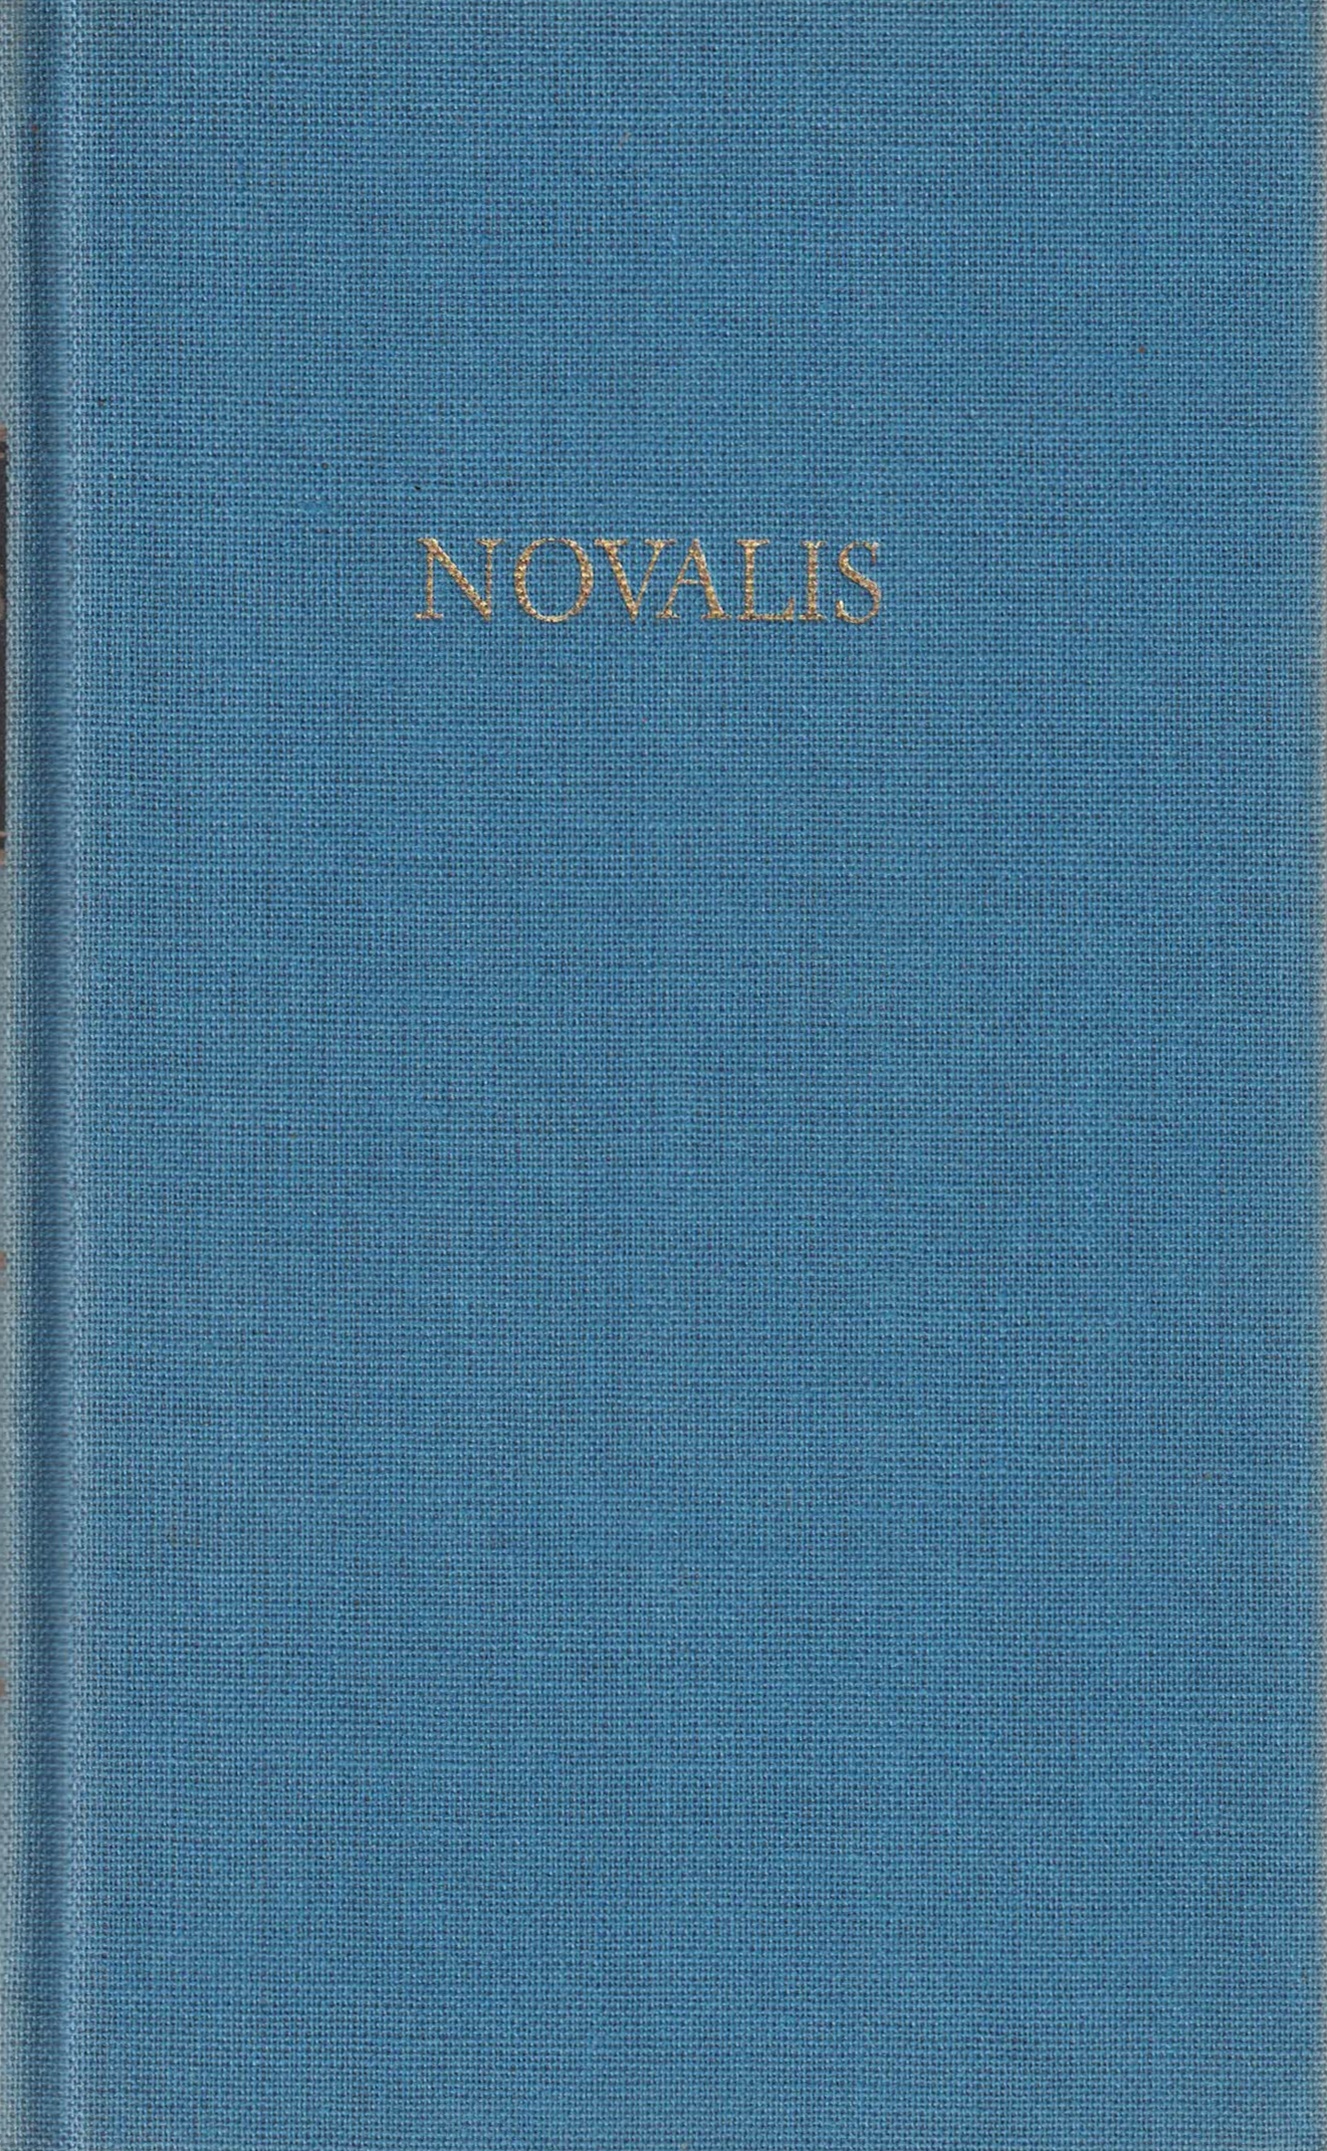 Novalis Werke in einem Band